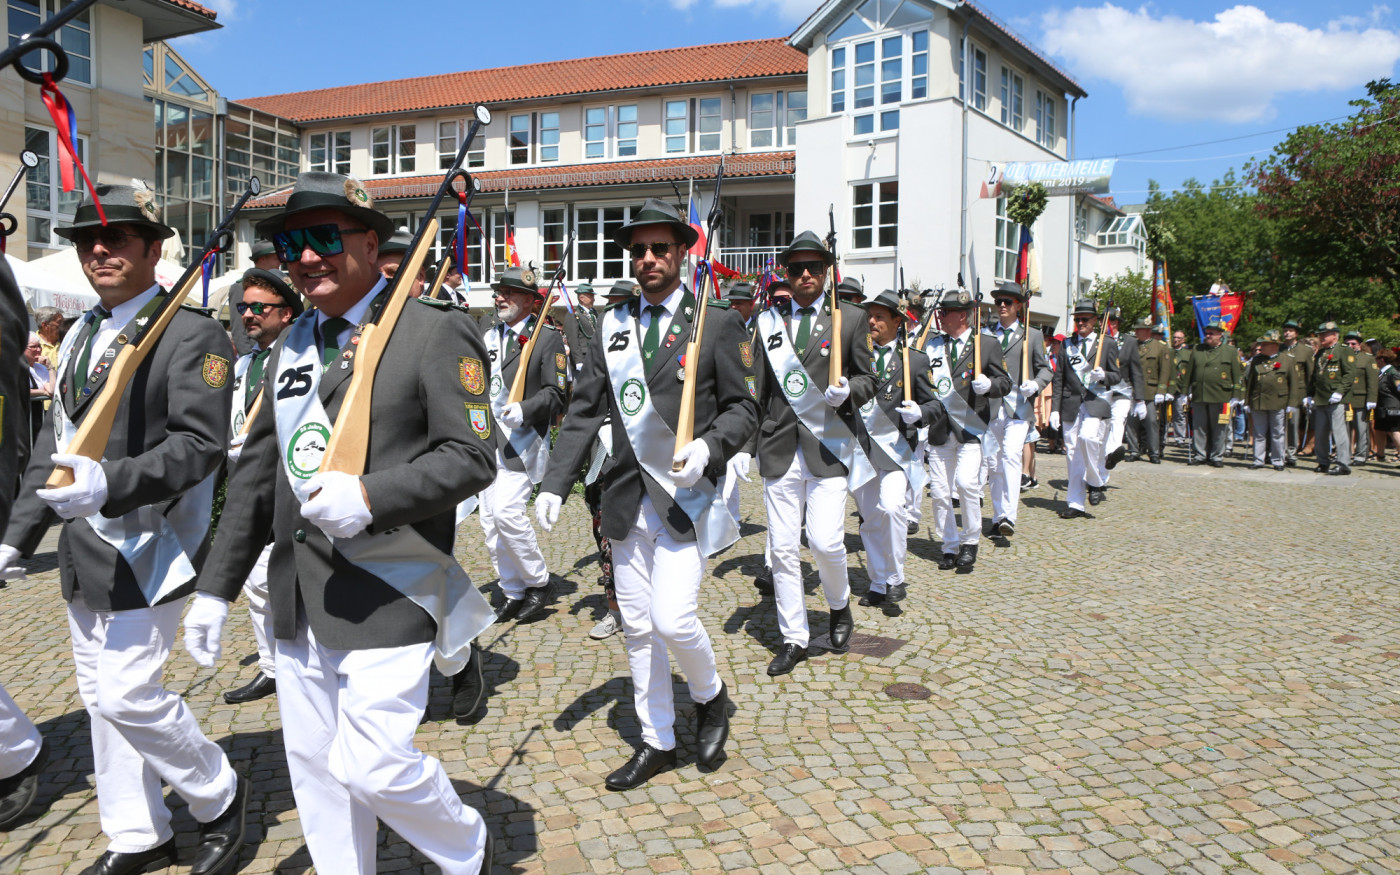 Die Entscheidung ist gefallen - Altstadtfest, Schützenfest und viele weitere Veranstaltungen in Gifhorn fallen aus